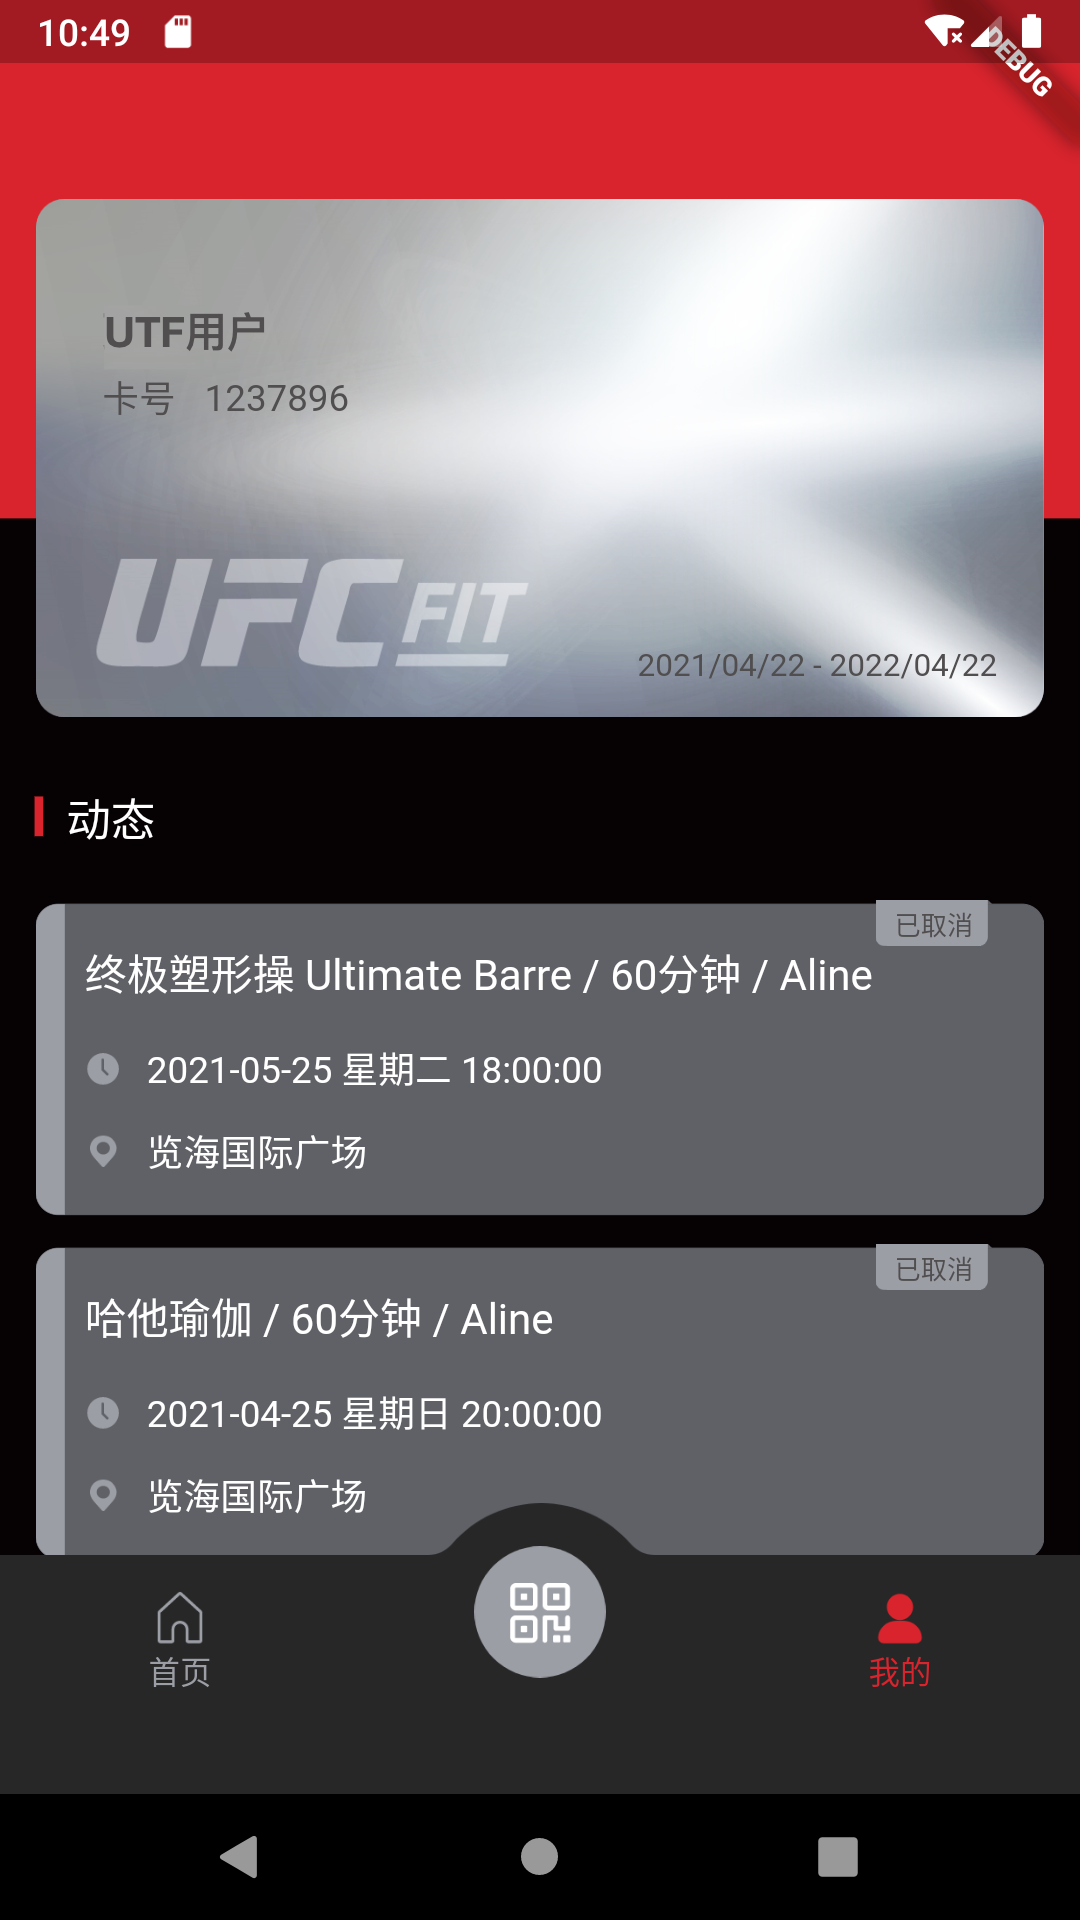 UFC FIT健身App 1.0.2